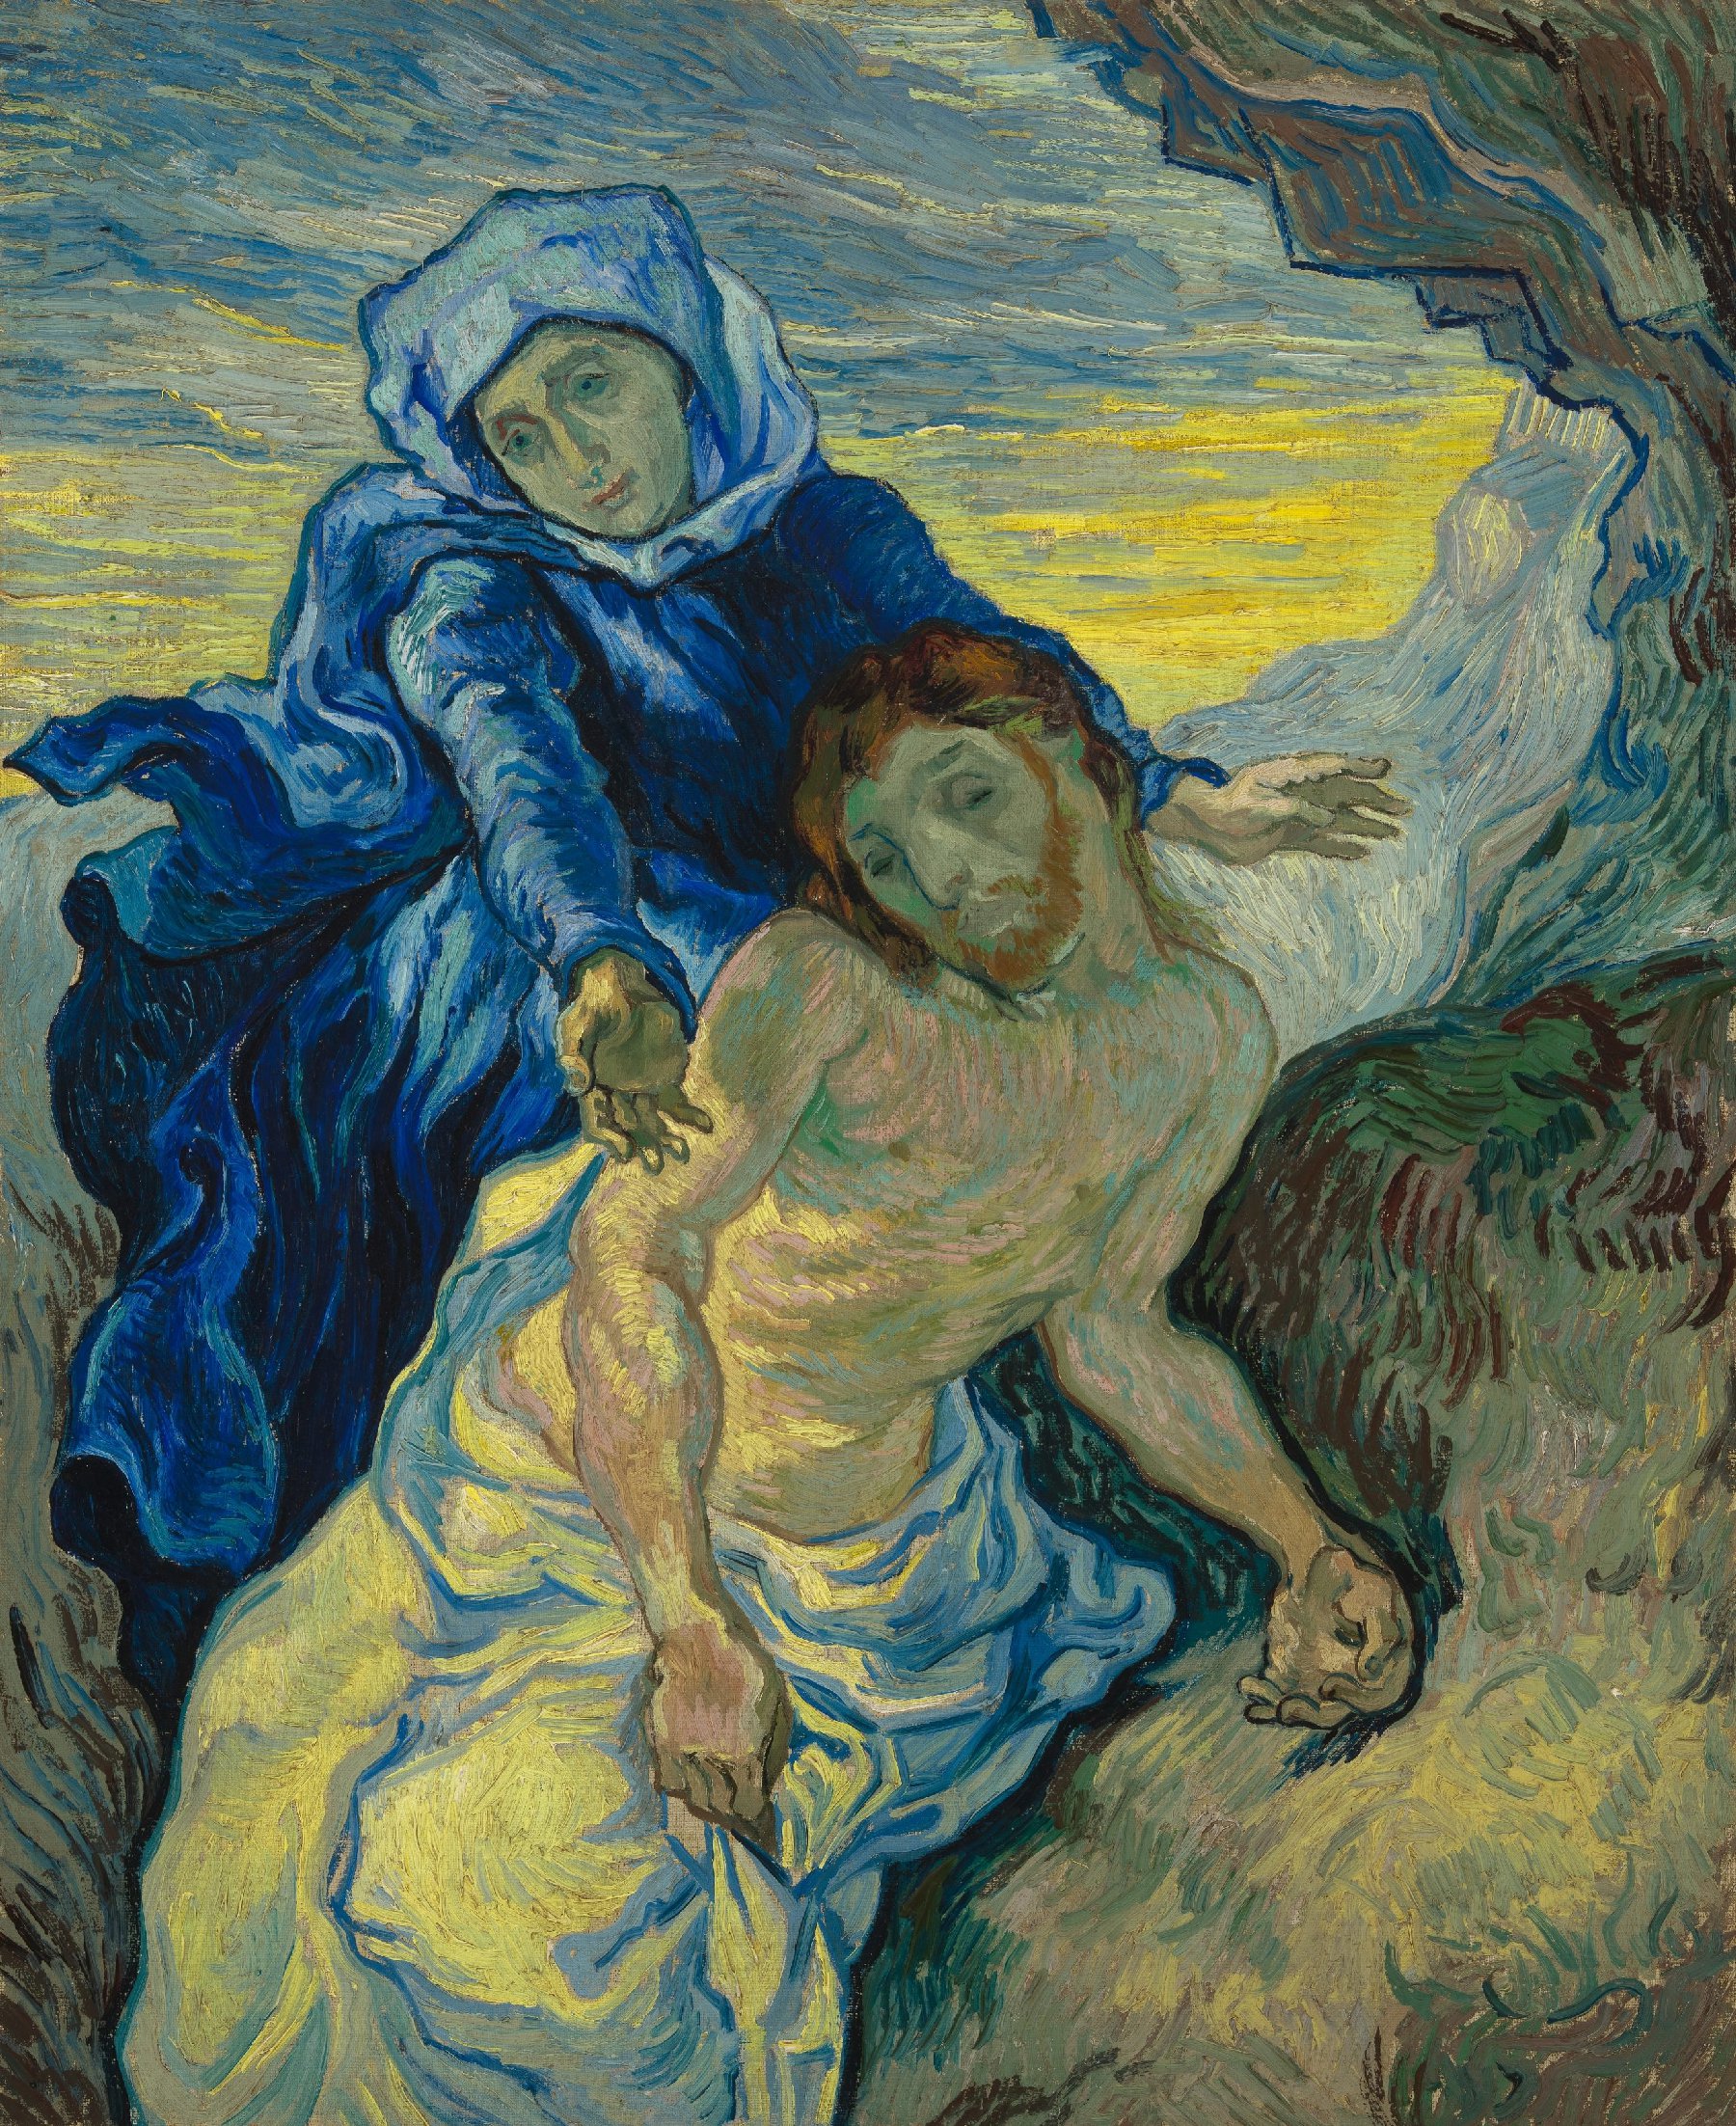 Pietà (naar Delacroix) Vincent van Gogh (1853 - 1890), Saint-Rémy-de-Provence, september 1889